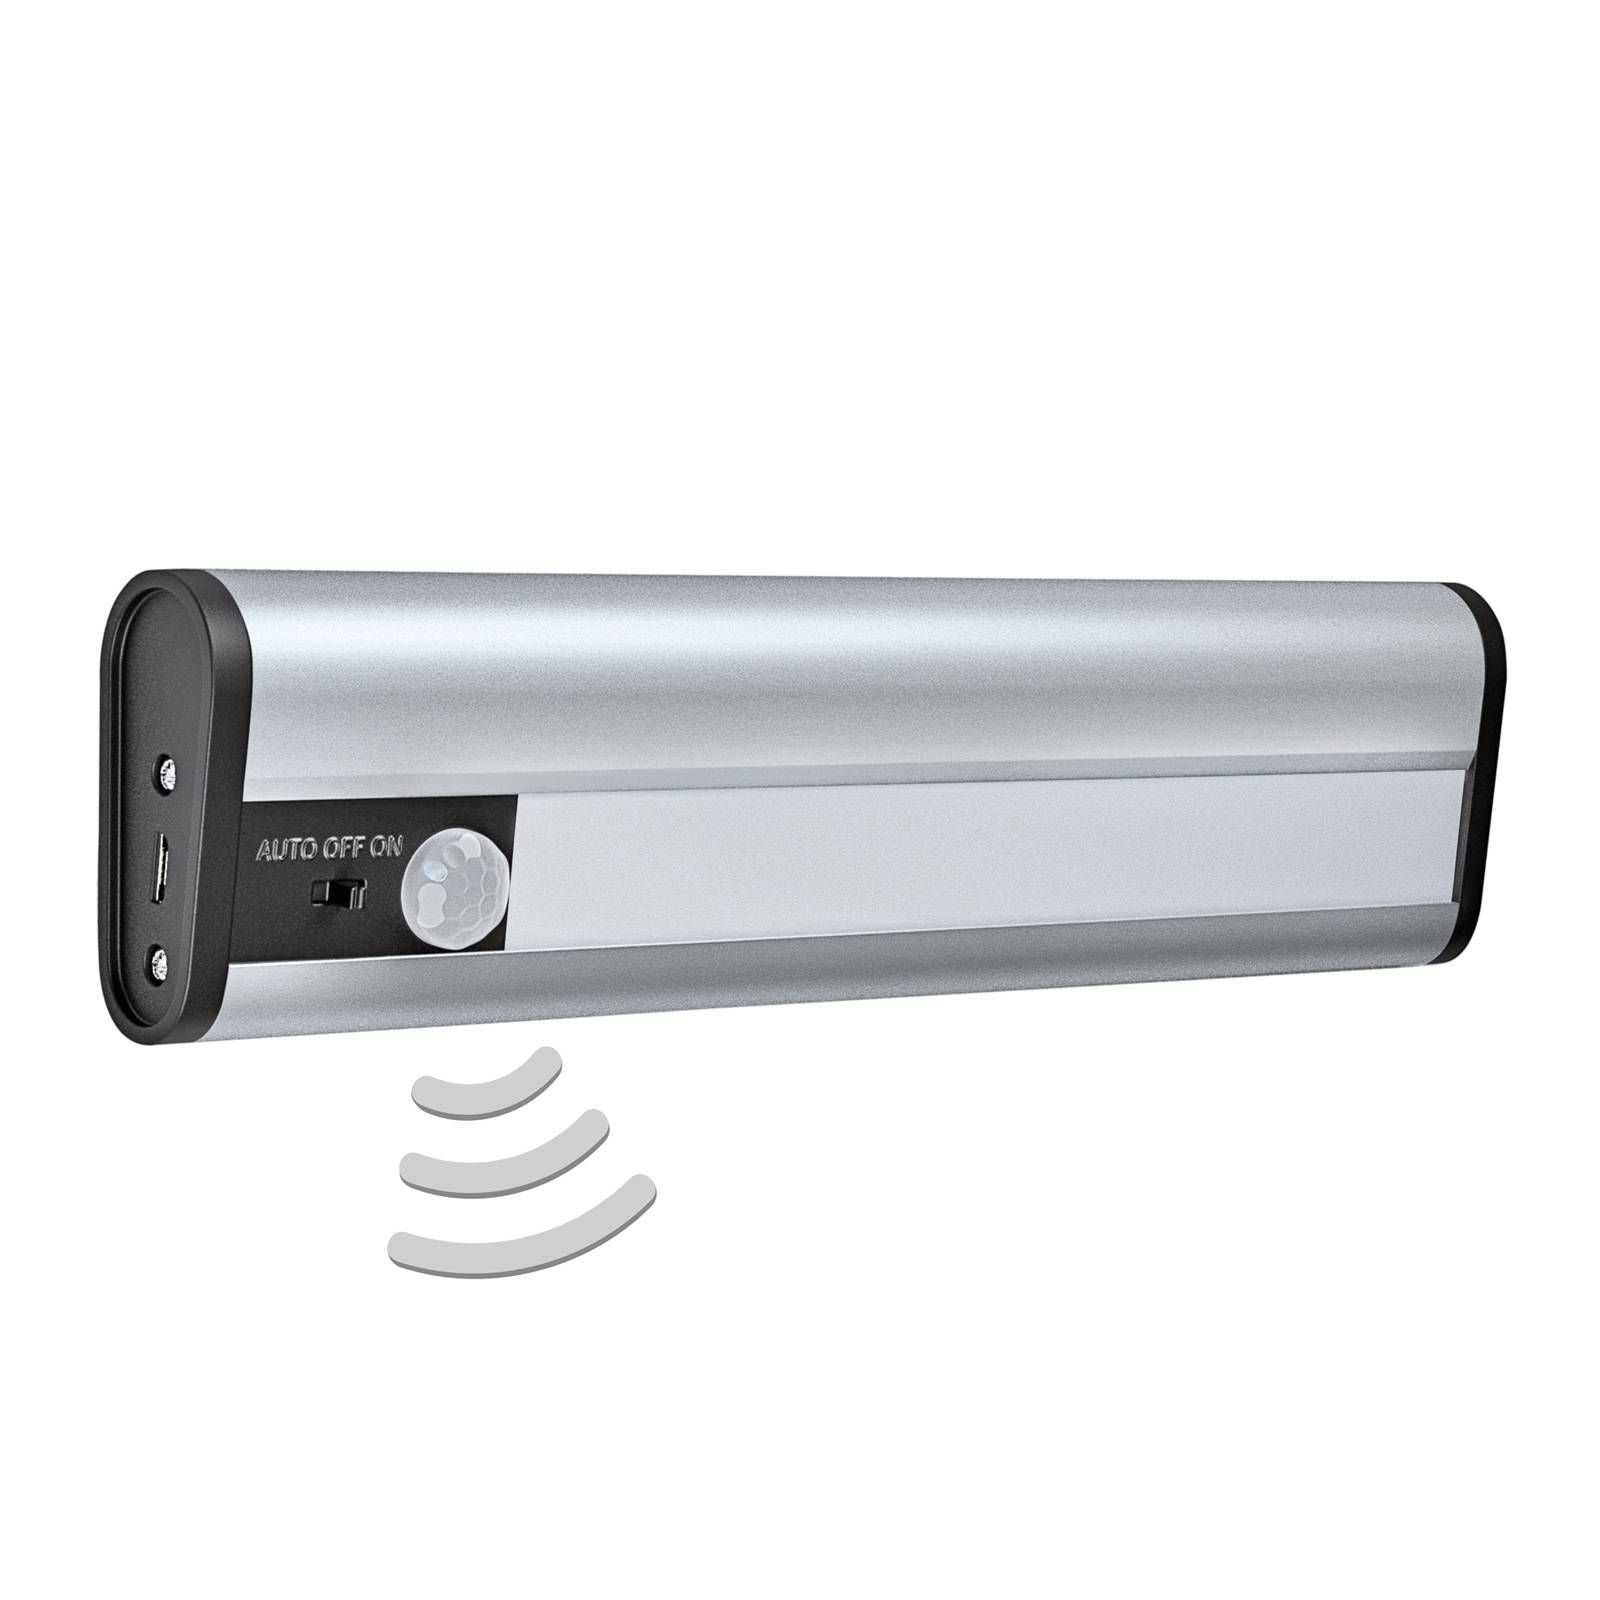 LEDVANCE Linear Mobile podhľadové svetlo USB 20 cm, Kuchyňa, hliník, polykarbonát, 1W, P: 20 cm, L: 5 cm, K: 2.2cm